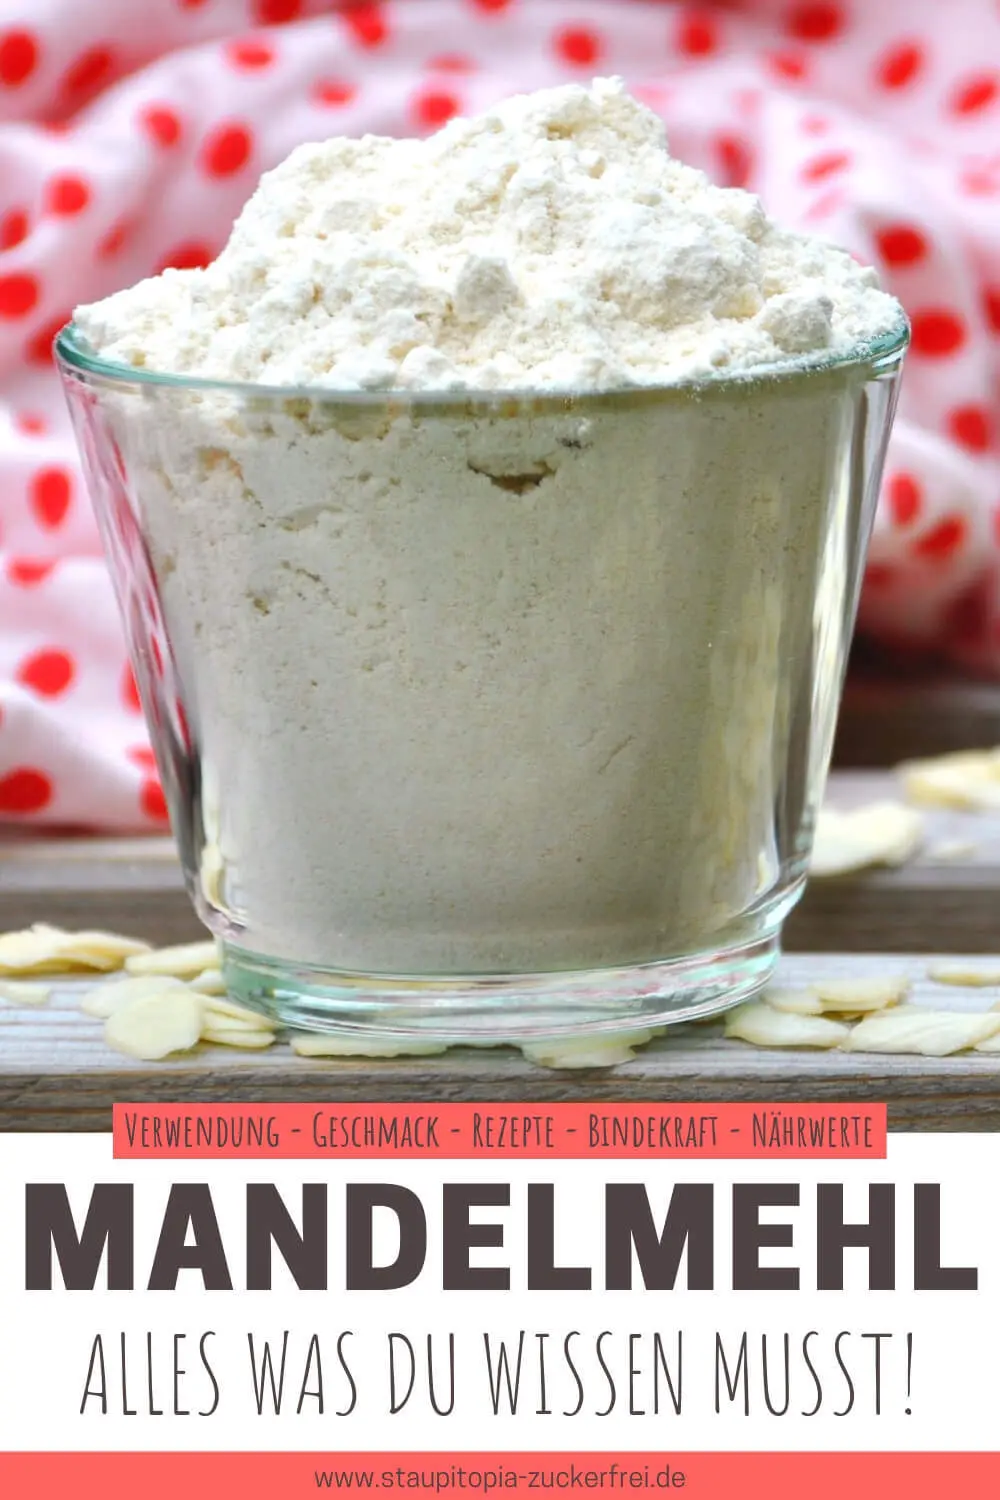 Mandelmehl - Rezepte, Nährwerte, Bindekraft, Geschmack